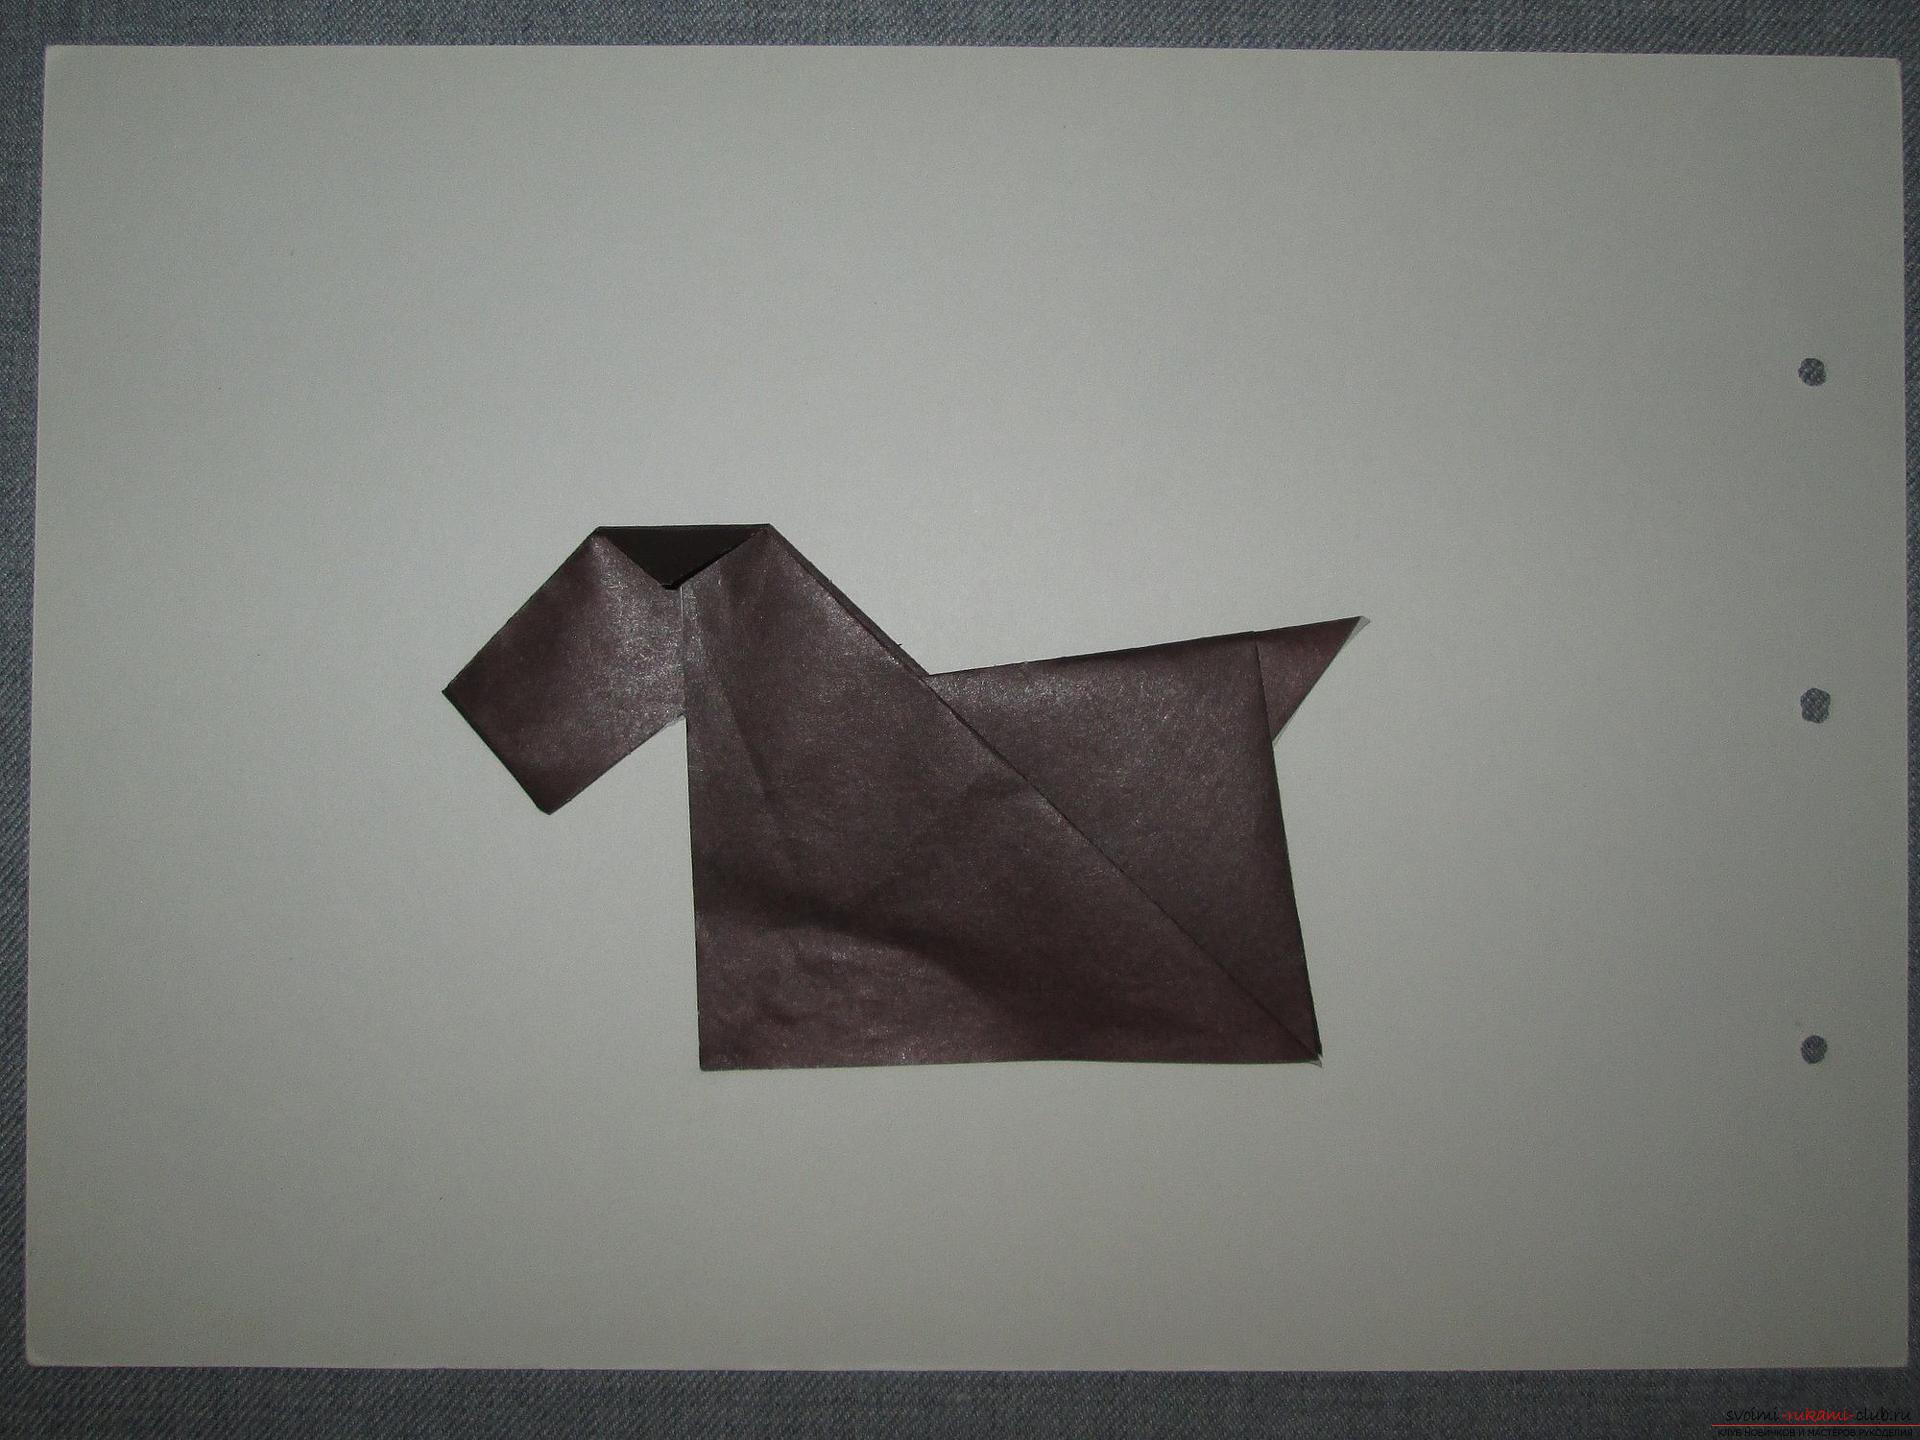 Этот подробный мастер-класс с фото и описание научит как сделать оригами для начинающих - оригами-собаку из бумаги.. Фото №15